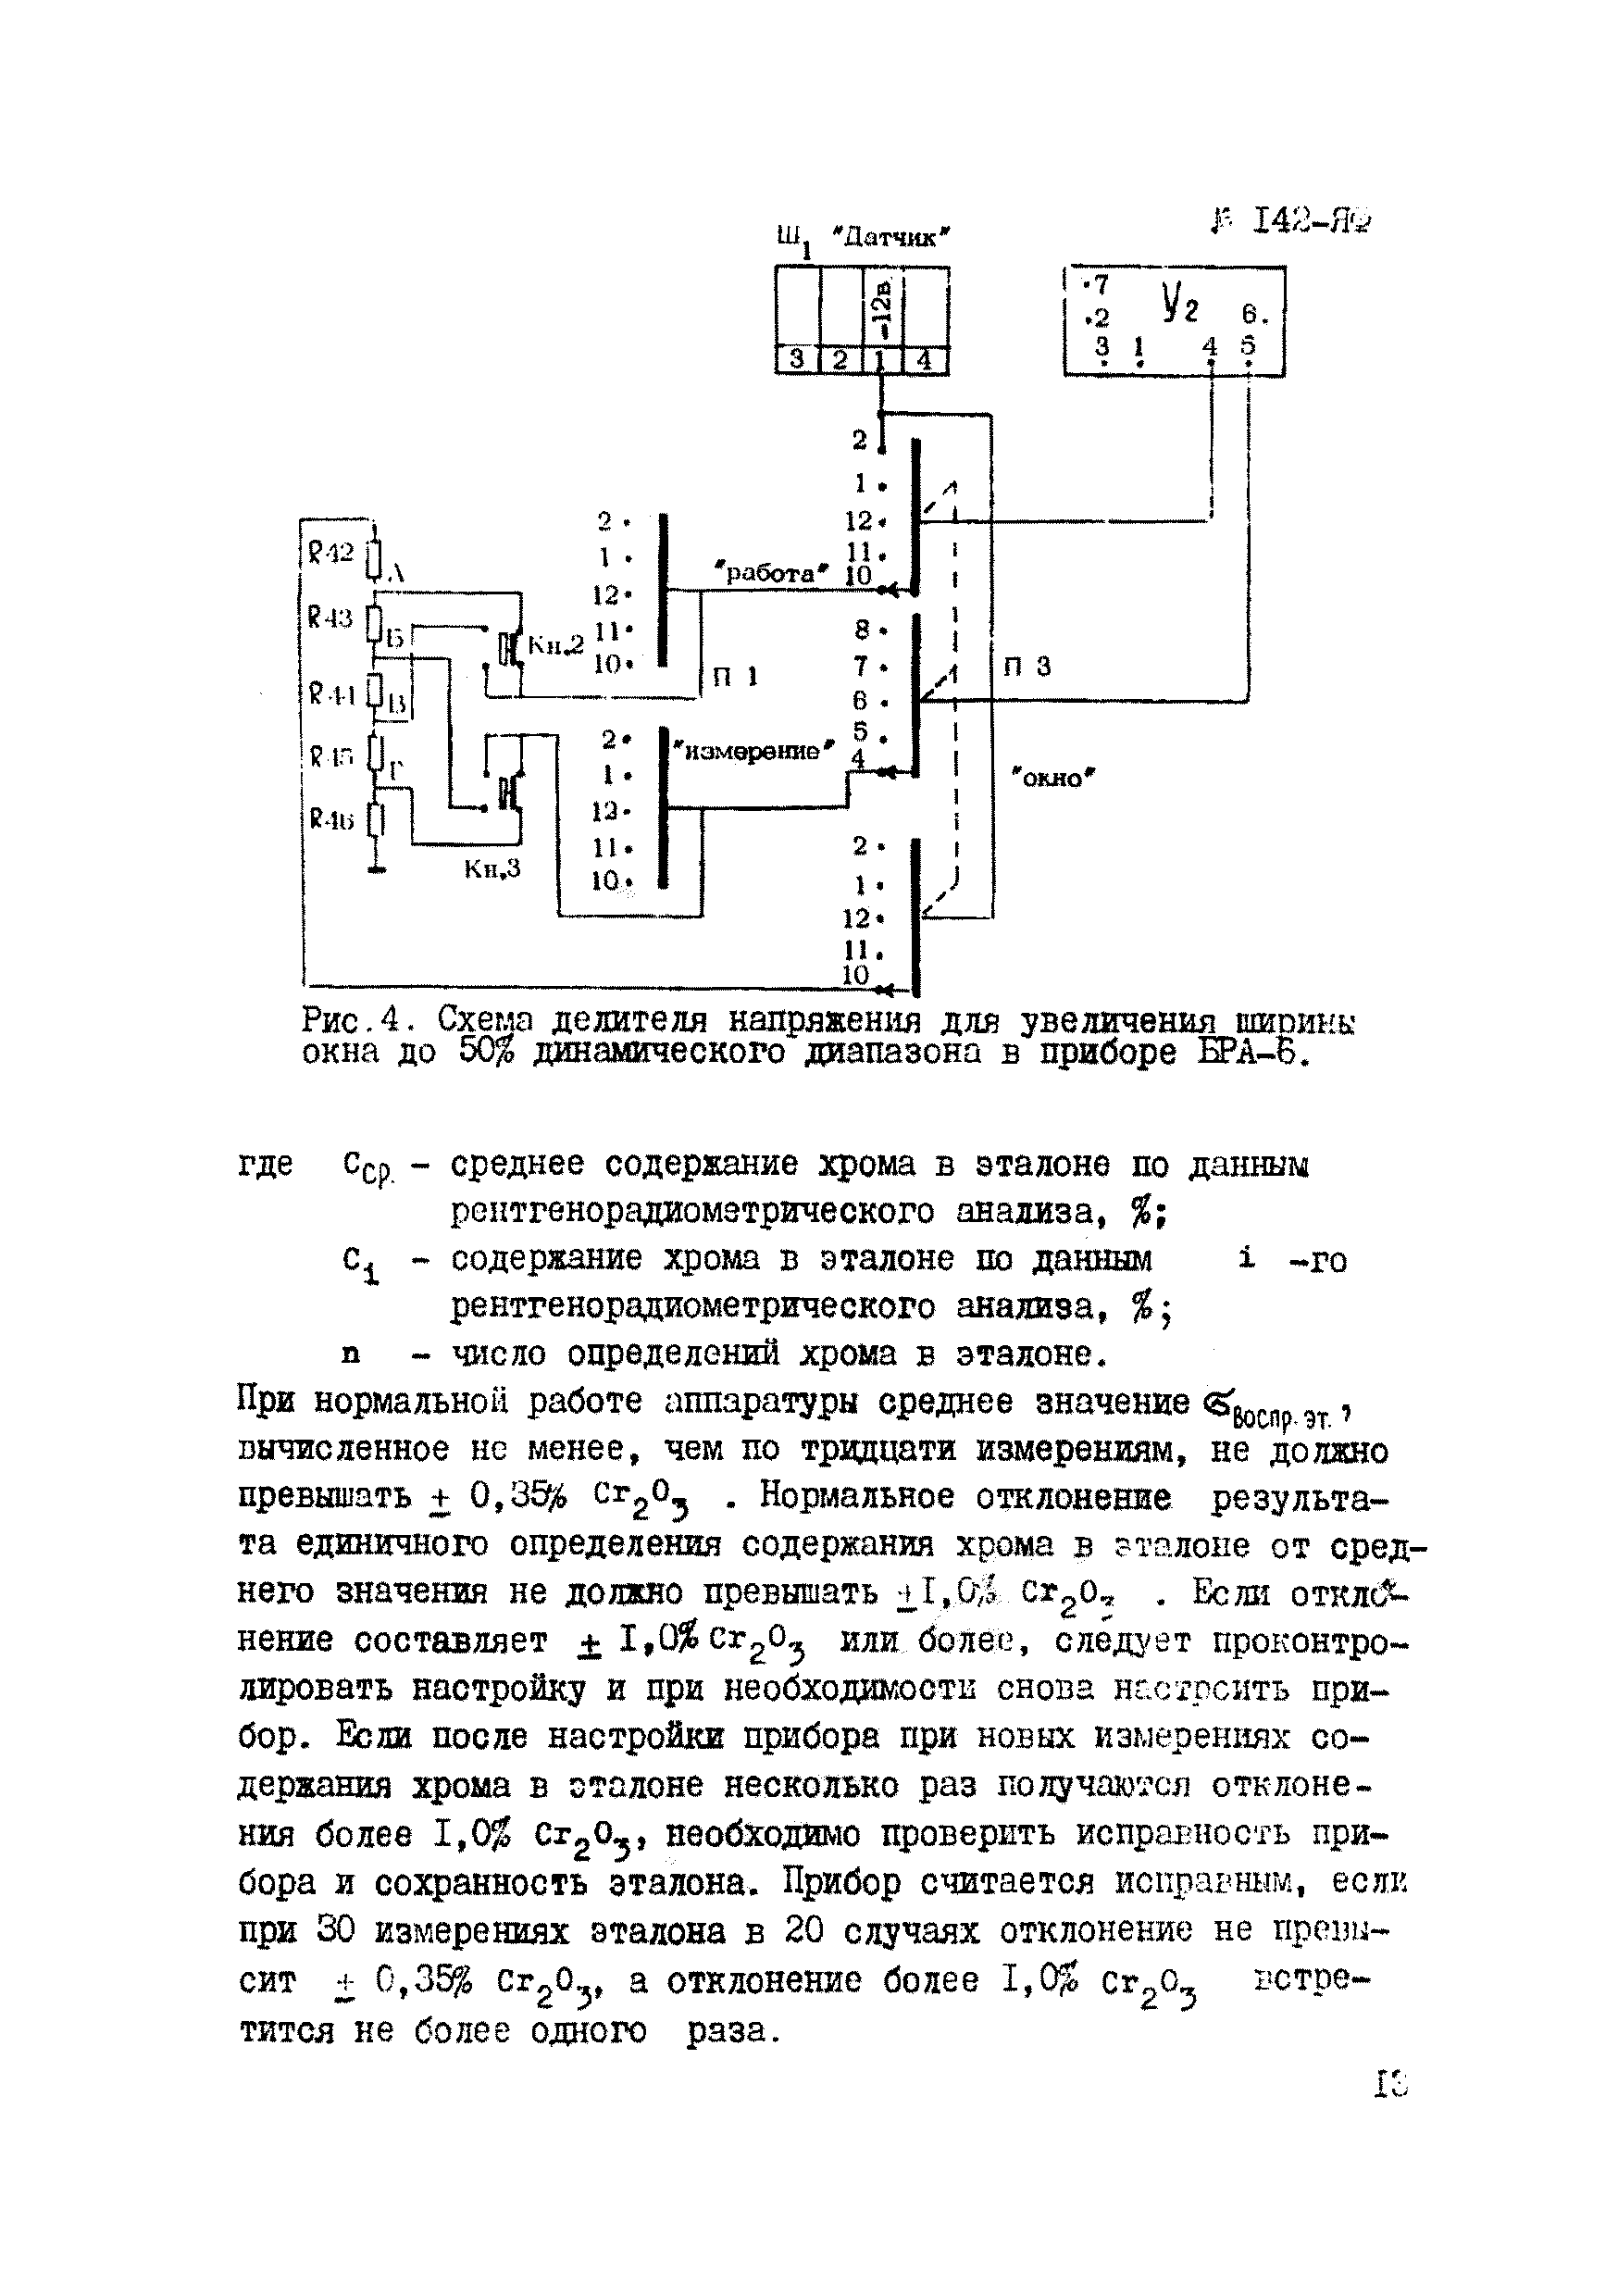 Инструкция НСАМ 142-ЯФ